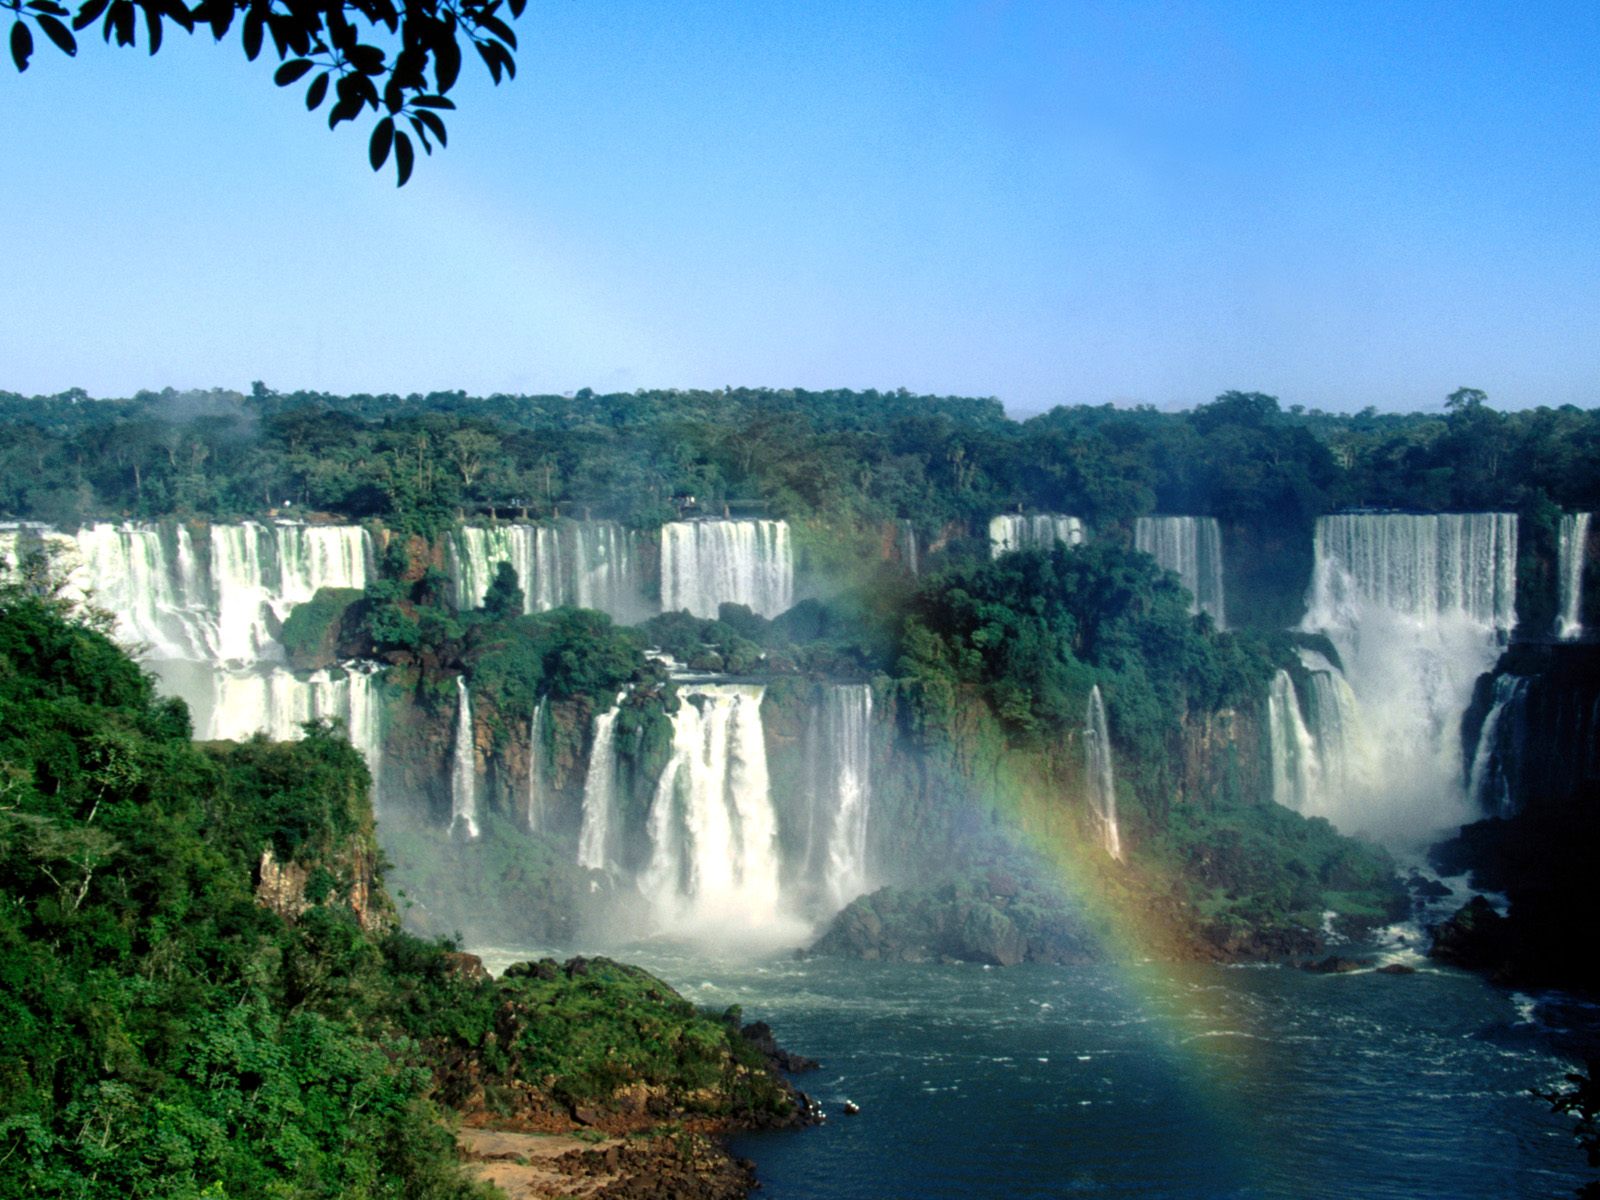 http://4.bp.blogspot.com/-sLhw8VDlKqc/ThD3zSeds2I/AAAAAAAAiYo/-XKt01b7zZk/s1600/Iguazu-Falls-Brazil.jpg